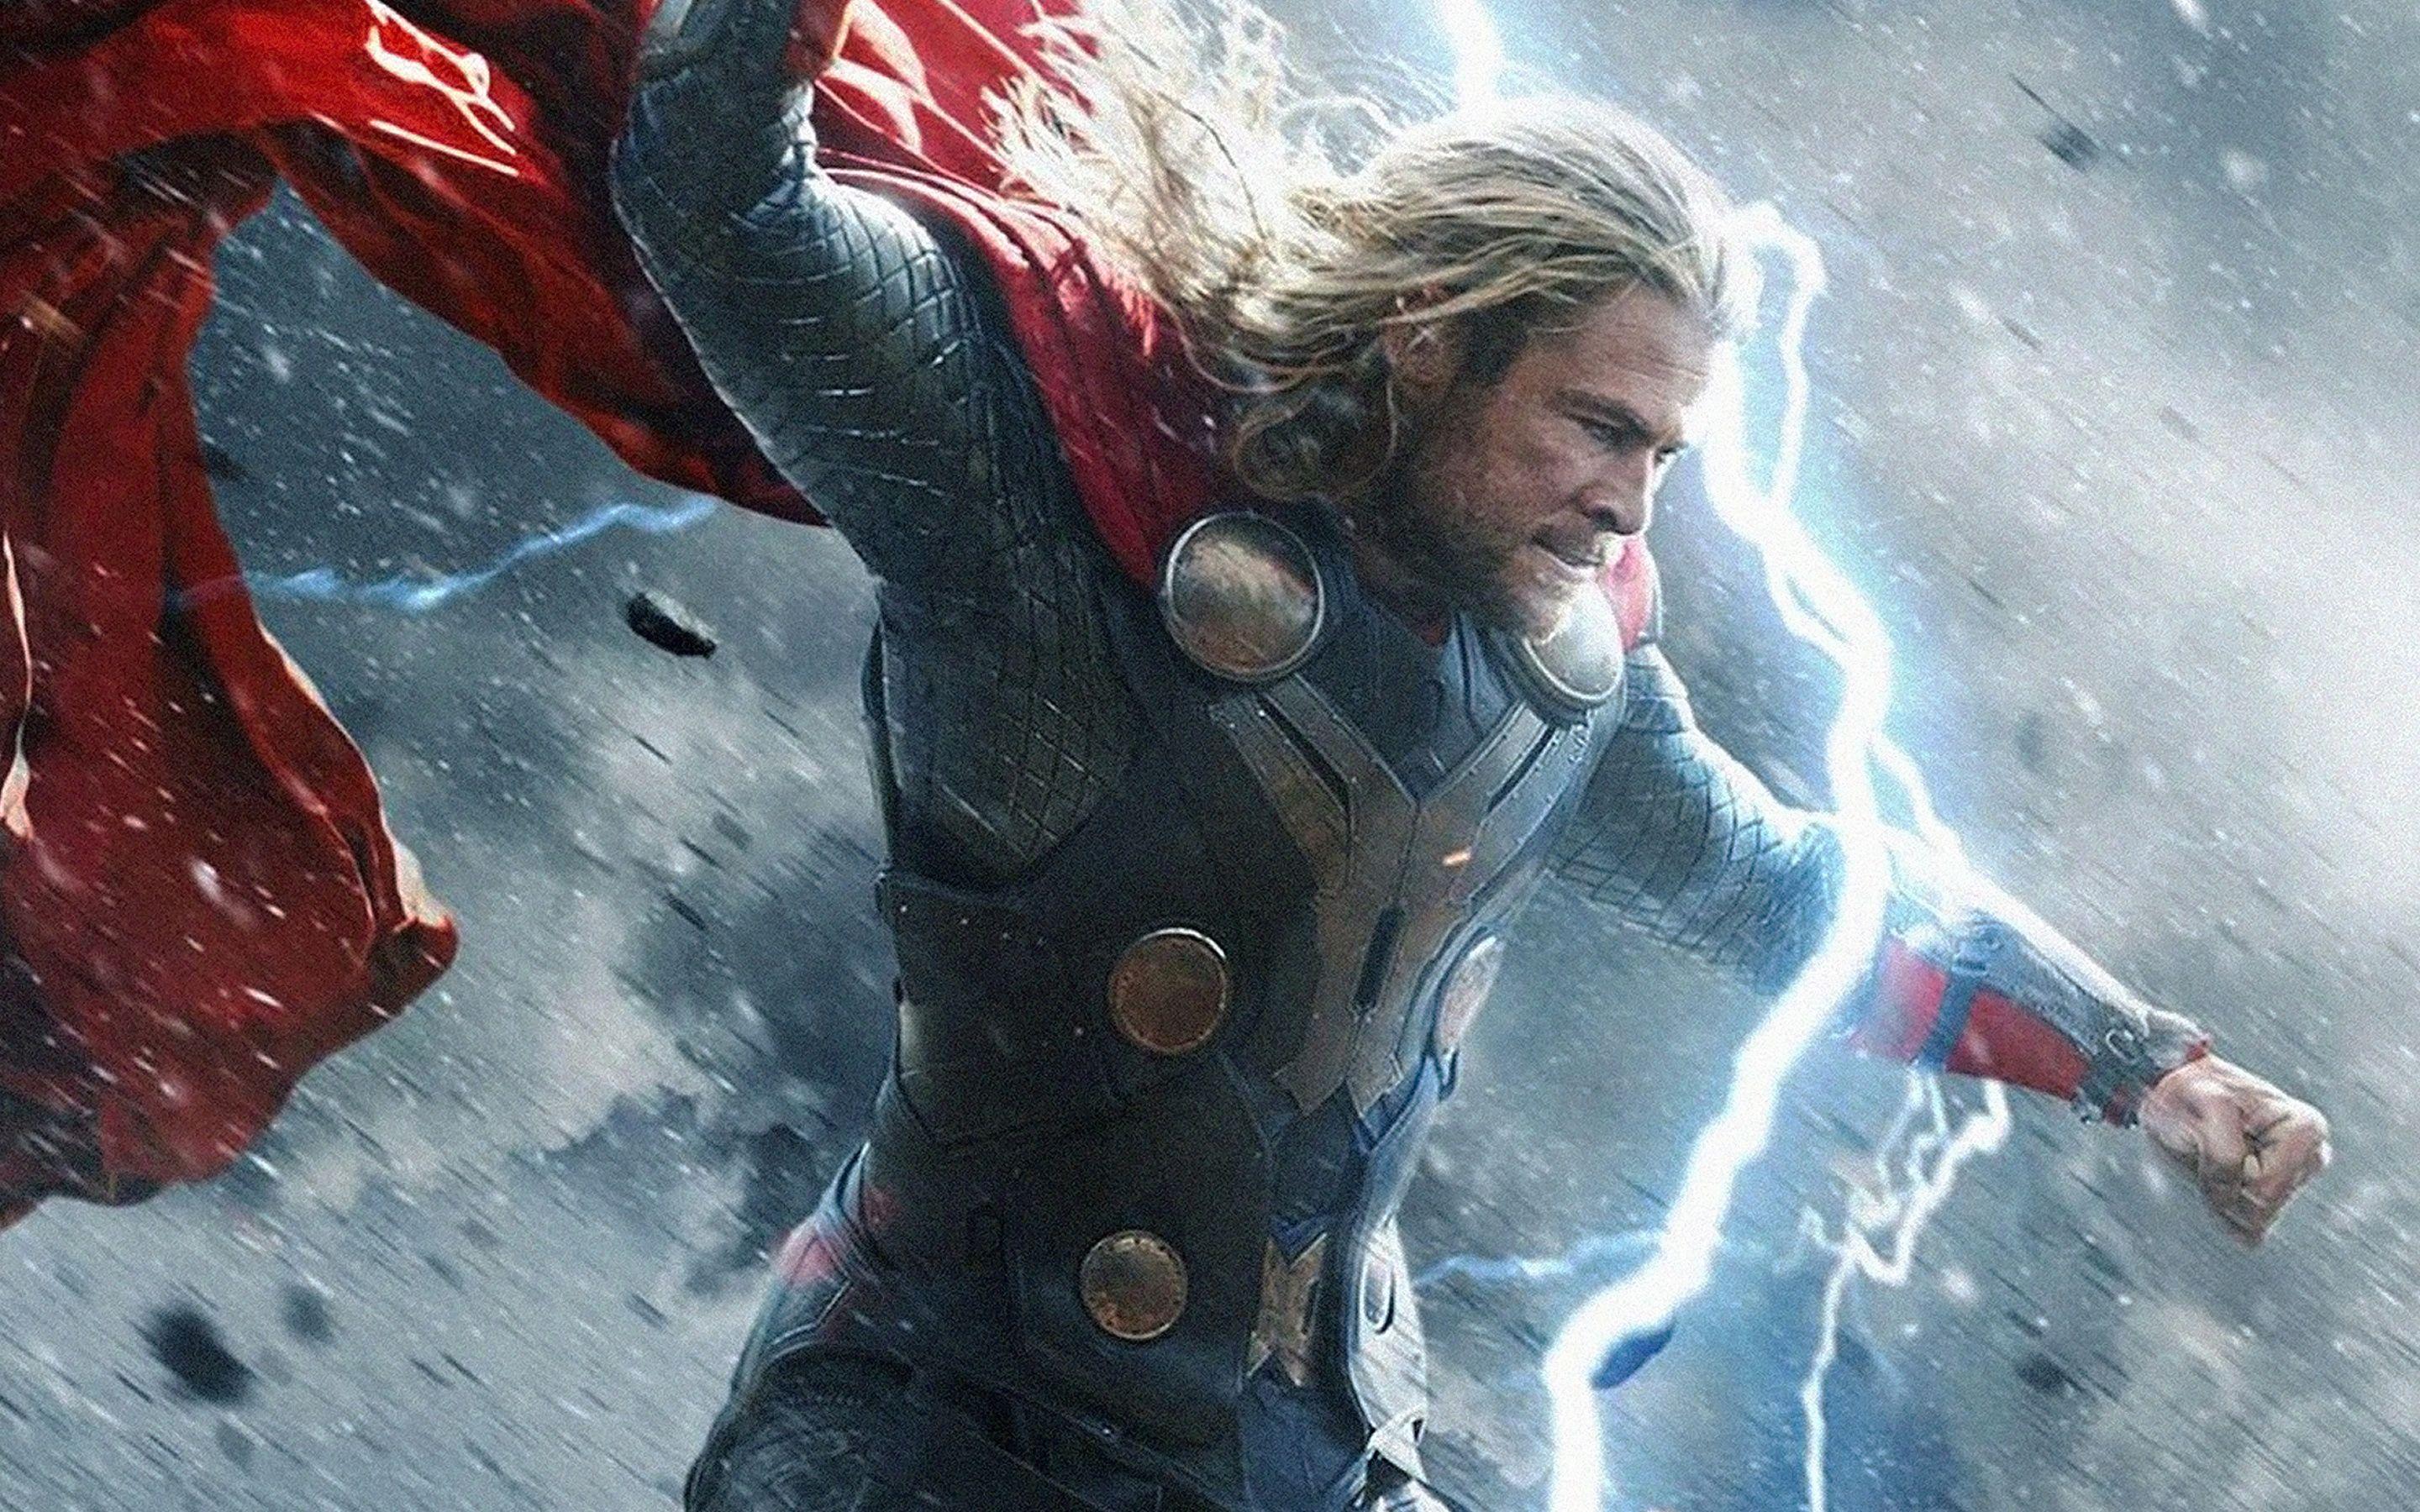 Thor 2 The Dark World Movie Wallpaper